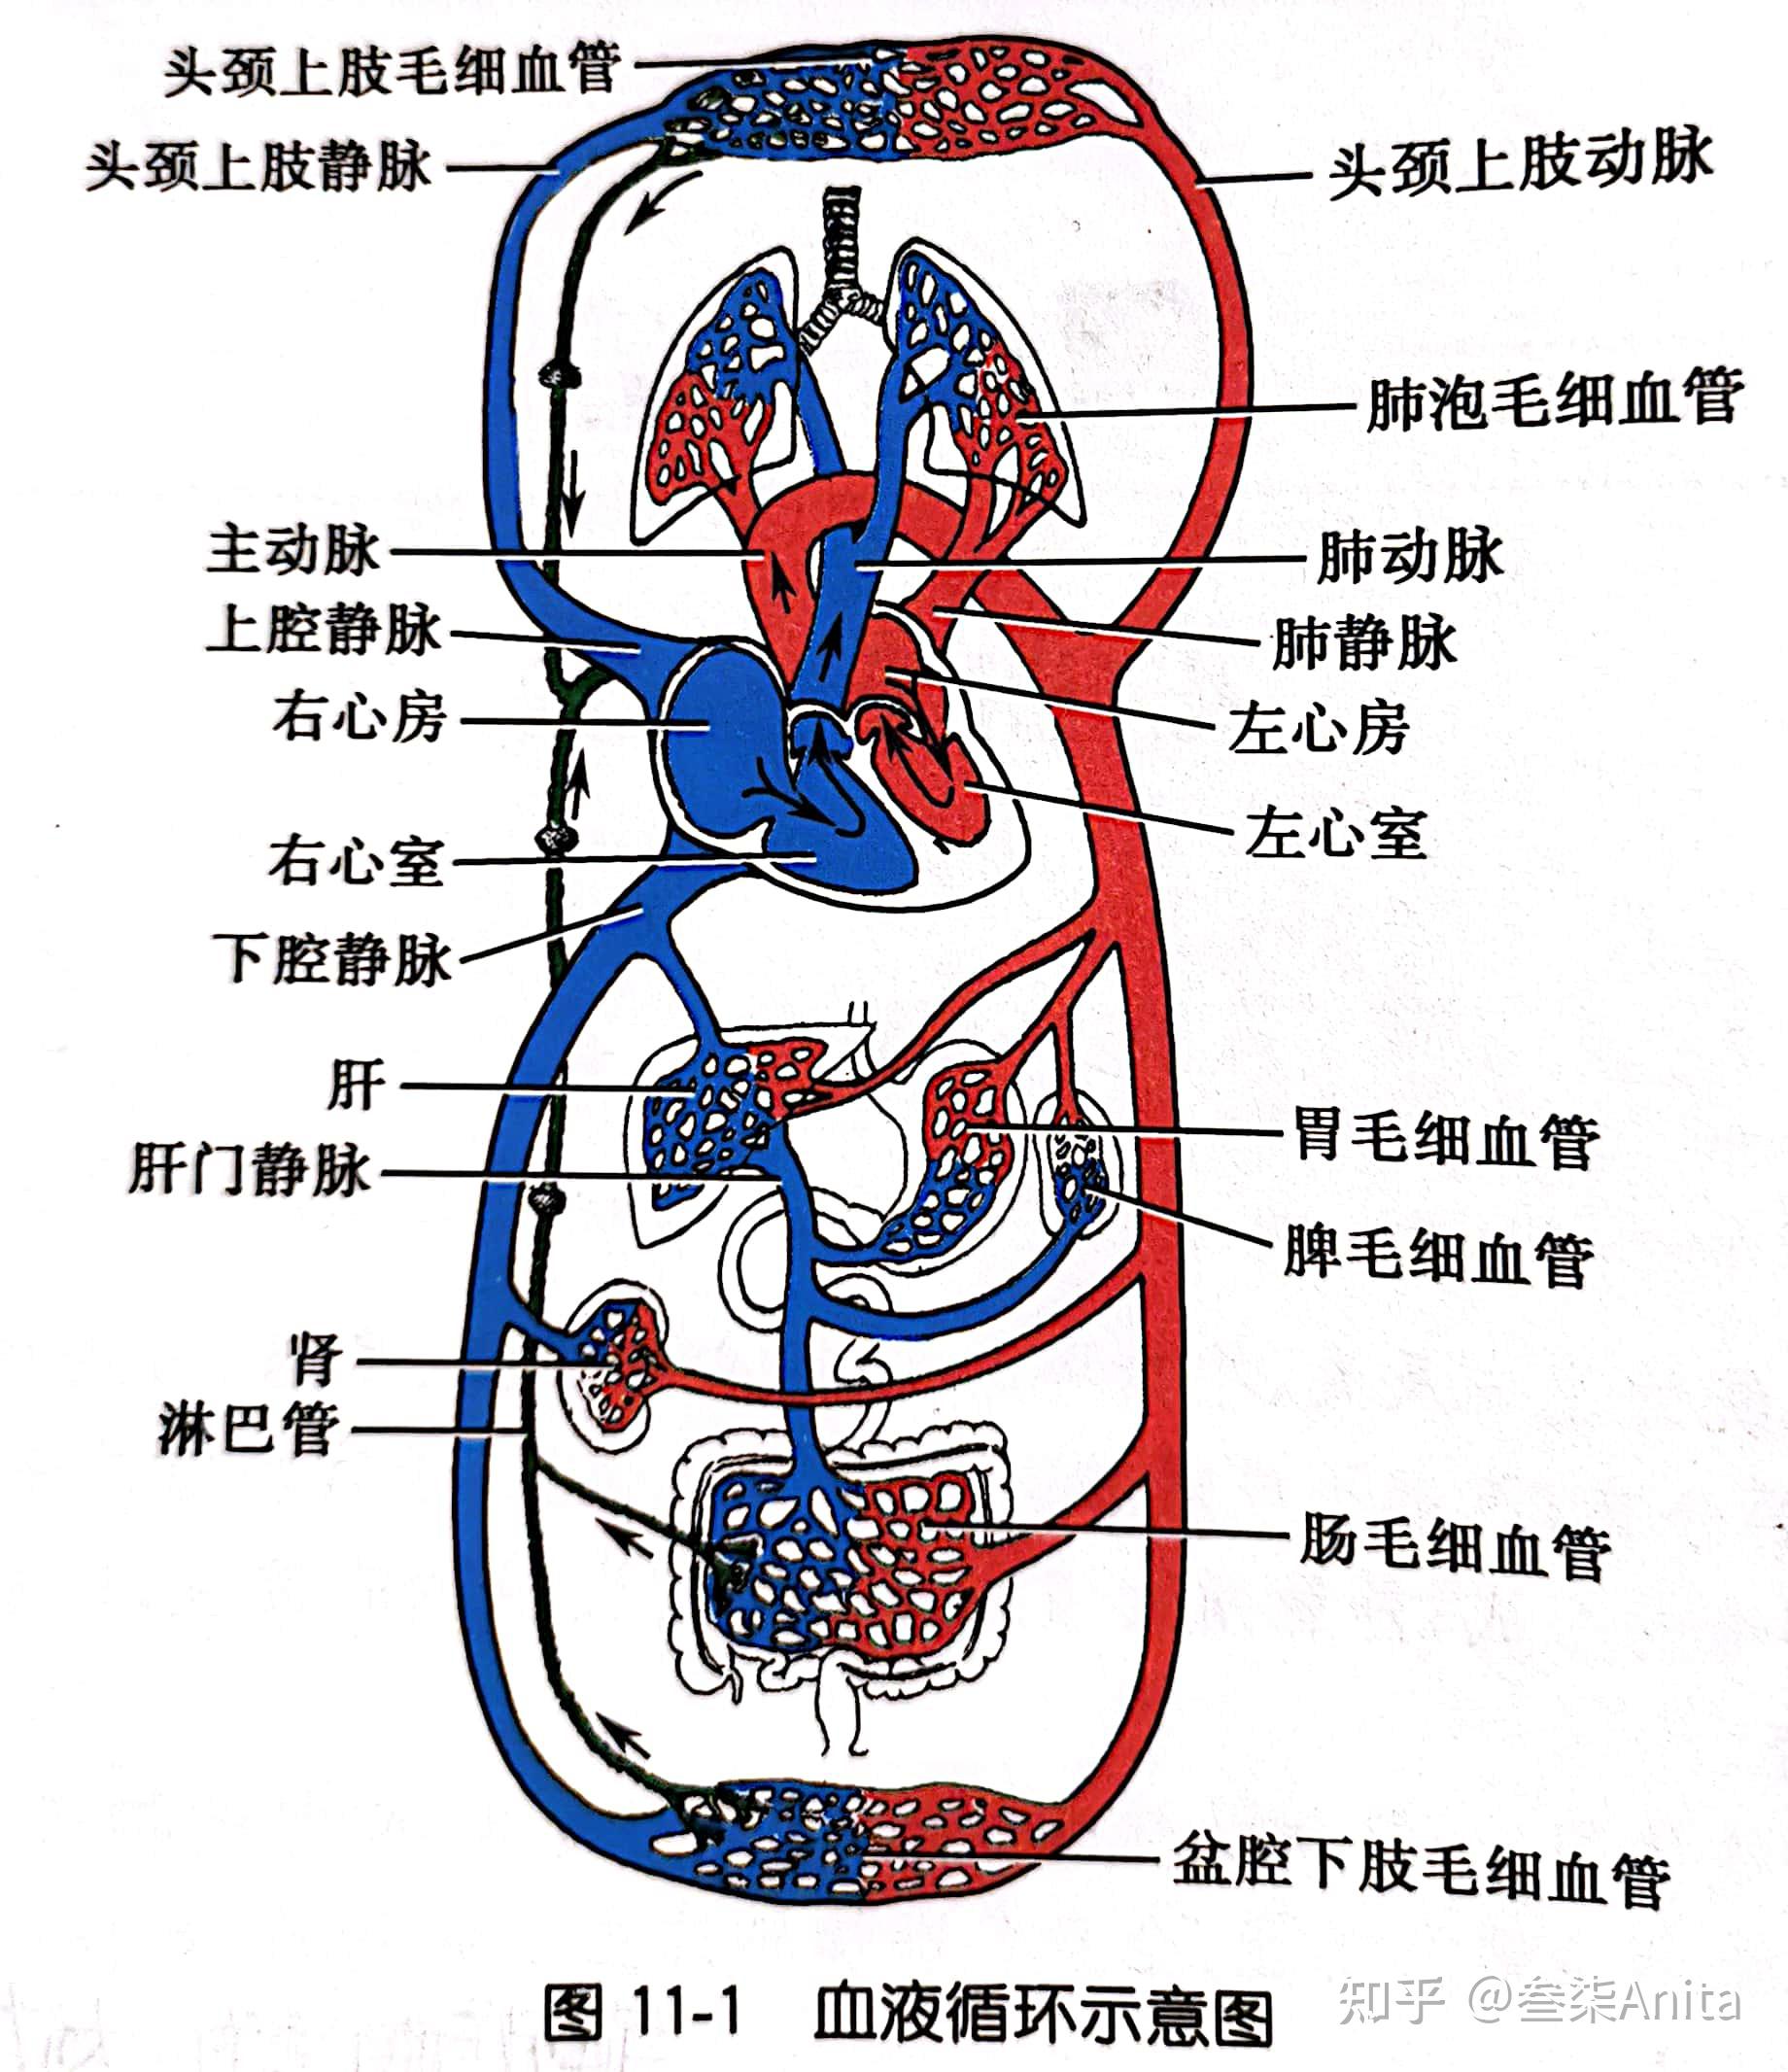 全身循环系统解剖图图片